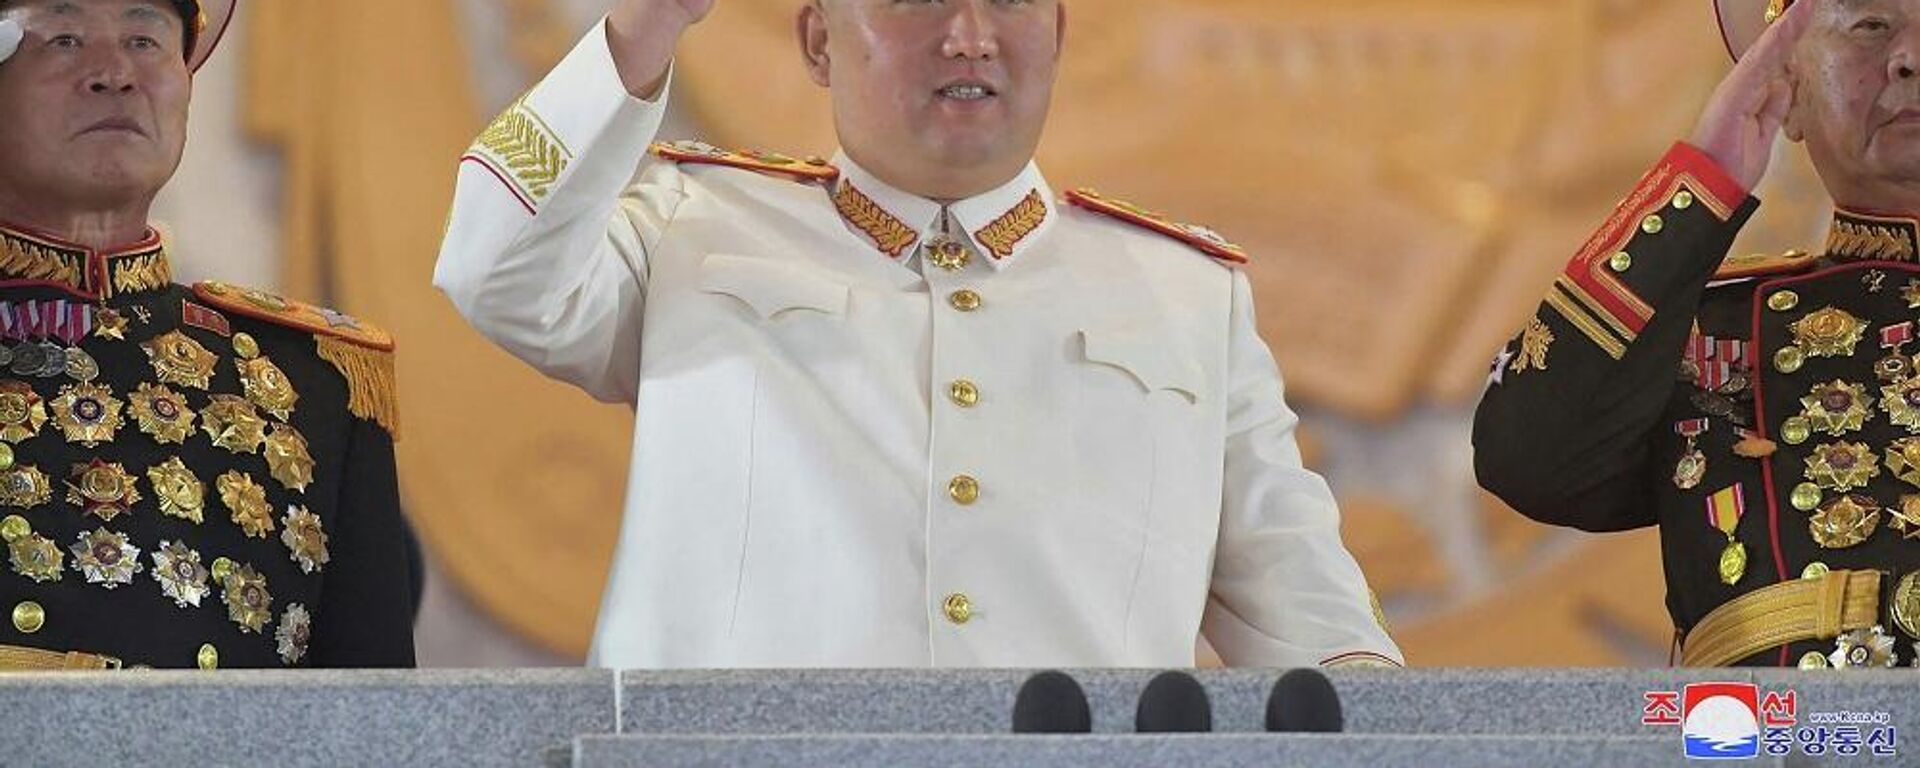 زعيم كوريا الشمالية، كيم جونغ أون، يشارك في عرض عسكري كبير أقيم في ساحة كيم إيل سونغ في بيونغ يانغ، 26 نيسان/ أبريل 2022 - سبوتنيك عربي, 1920, 16.05.2022